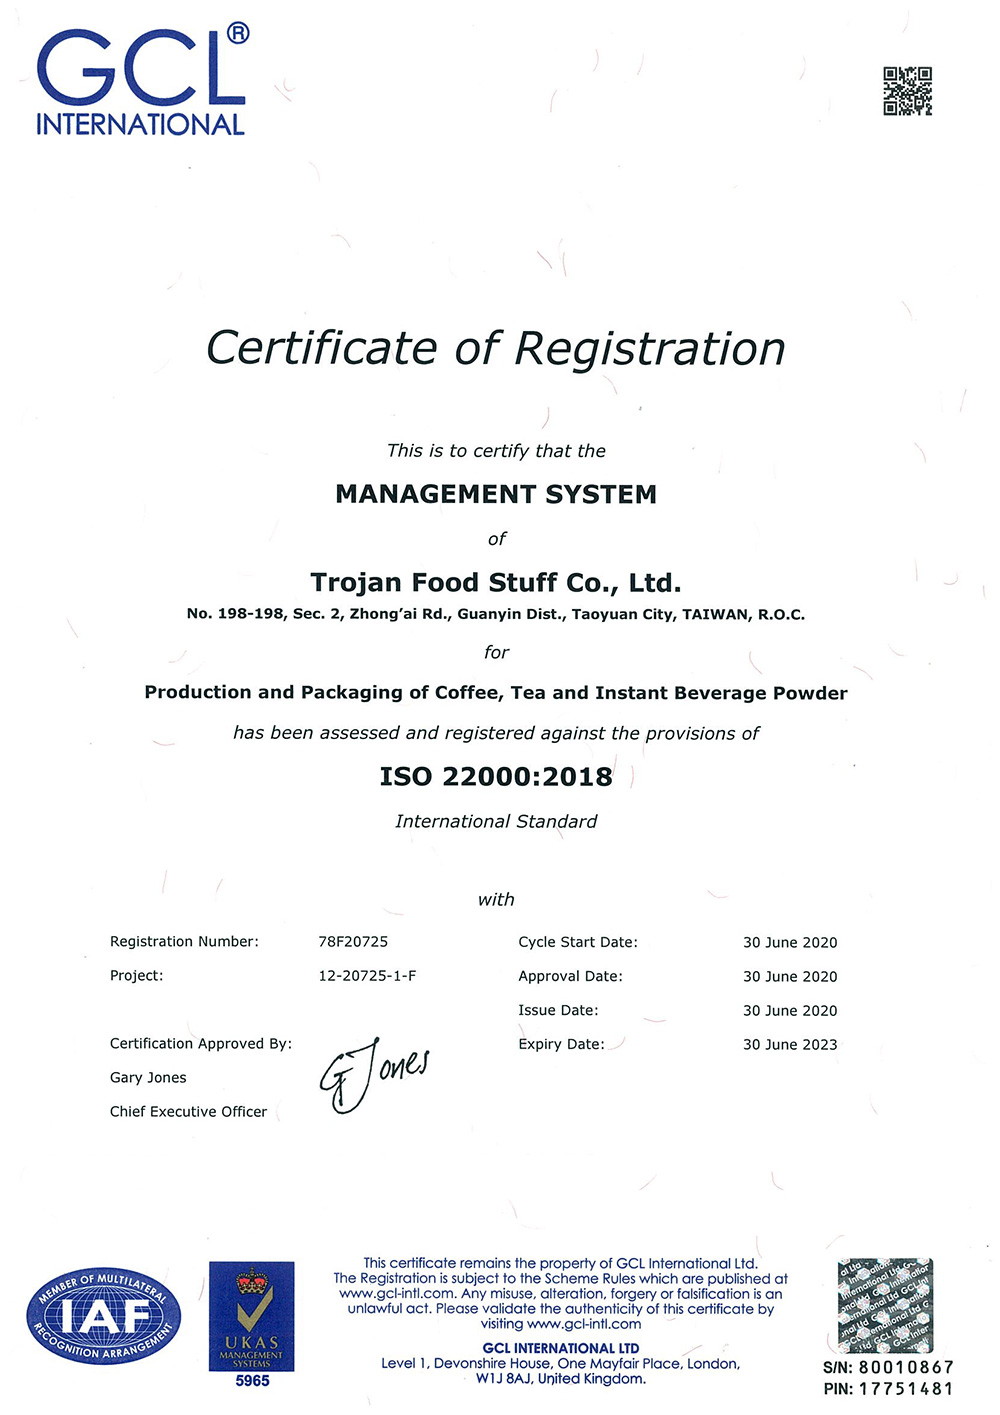 傳佳食品 ISO-22000:2018證書。